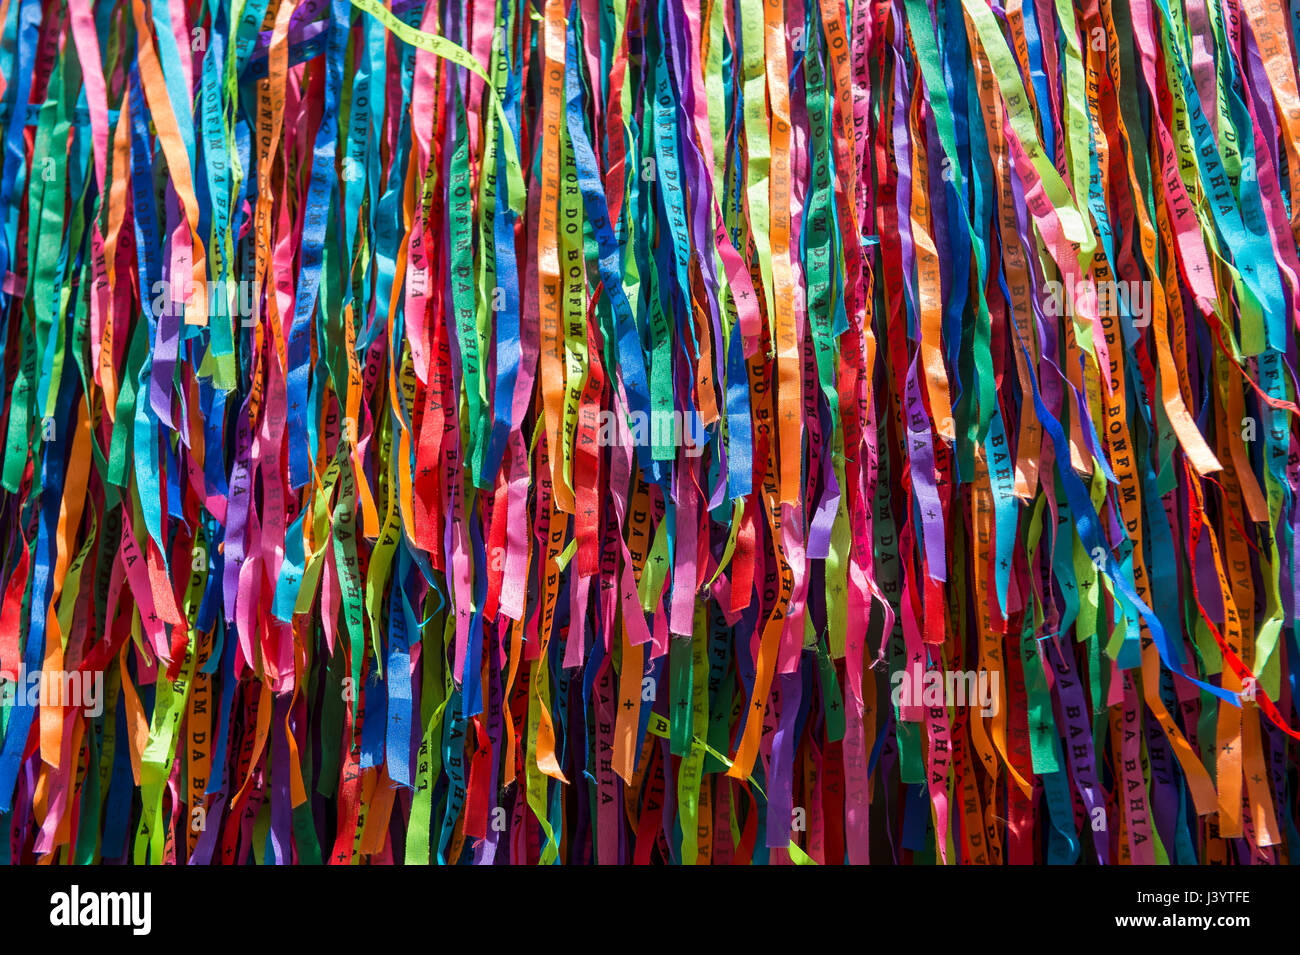 Farbenfrohe brasilianische Wunsch Bänder hängen in einem strukturierten Hintergrund Stockfoto